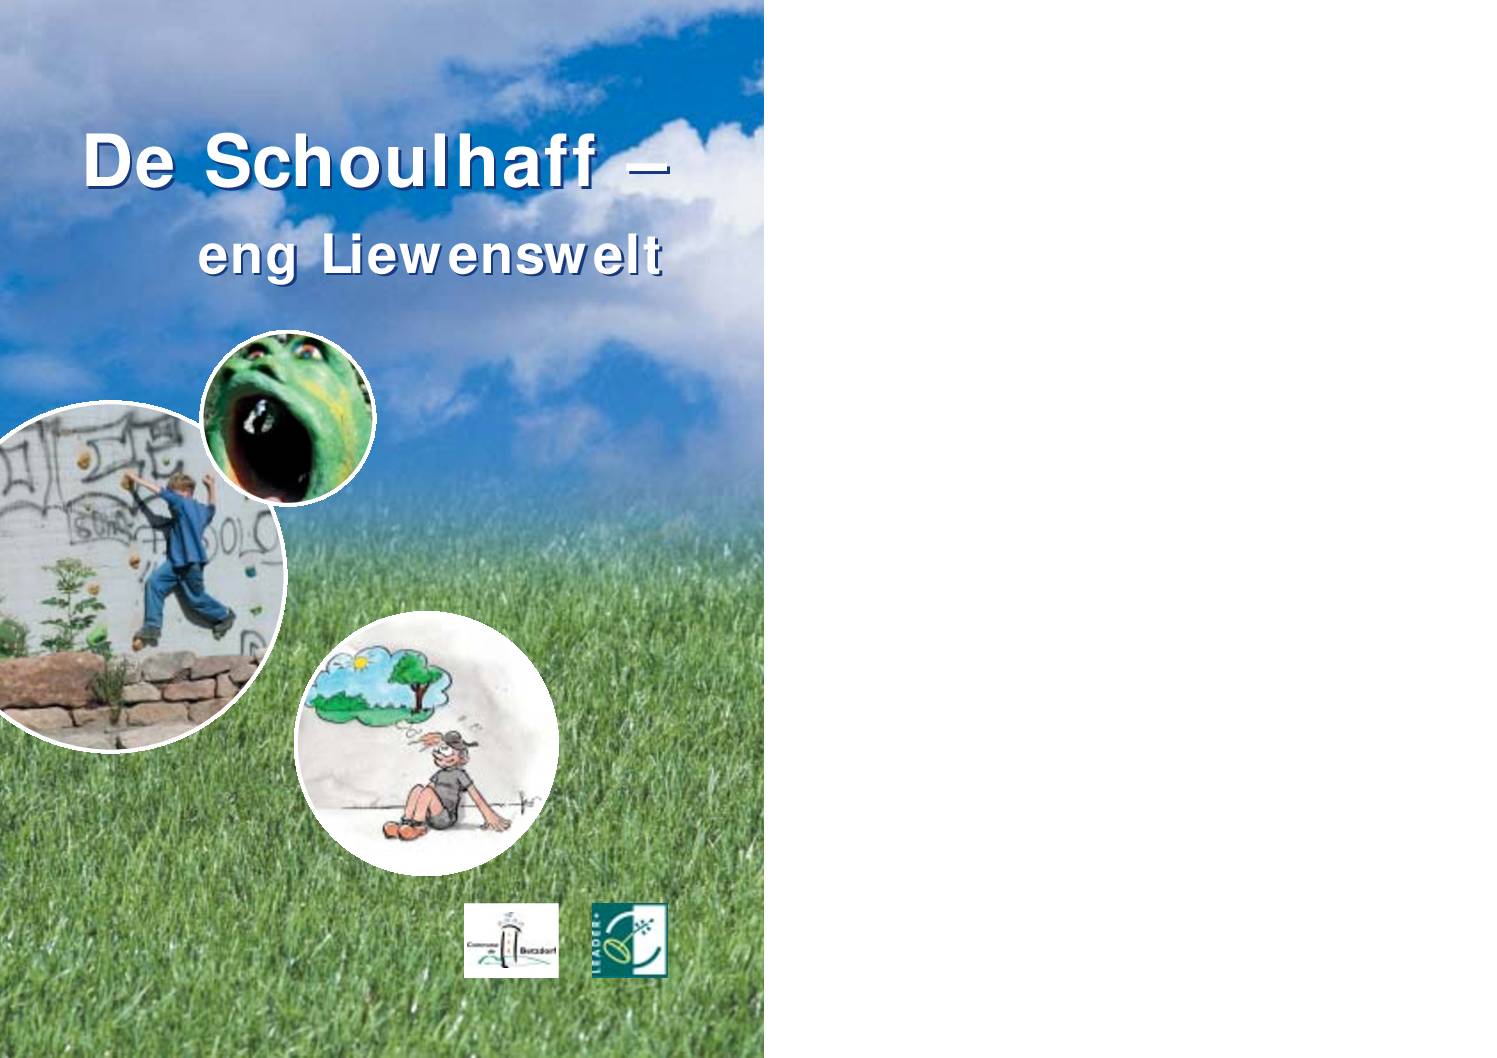 De Schoulhaff - eng Liewenswelt (2004-2005)